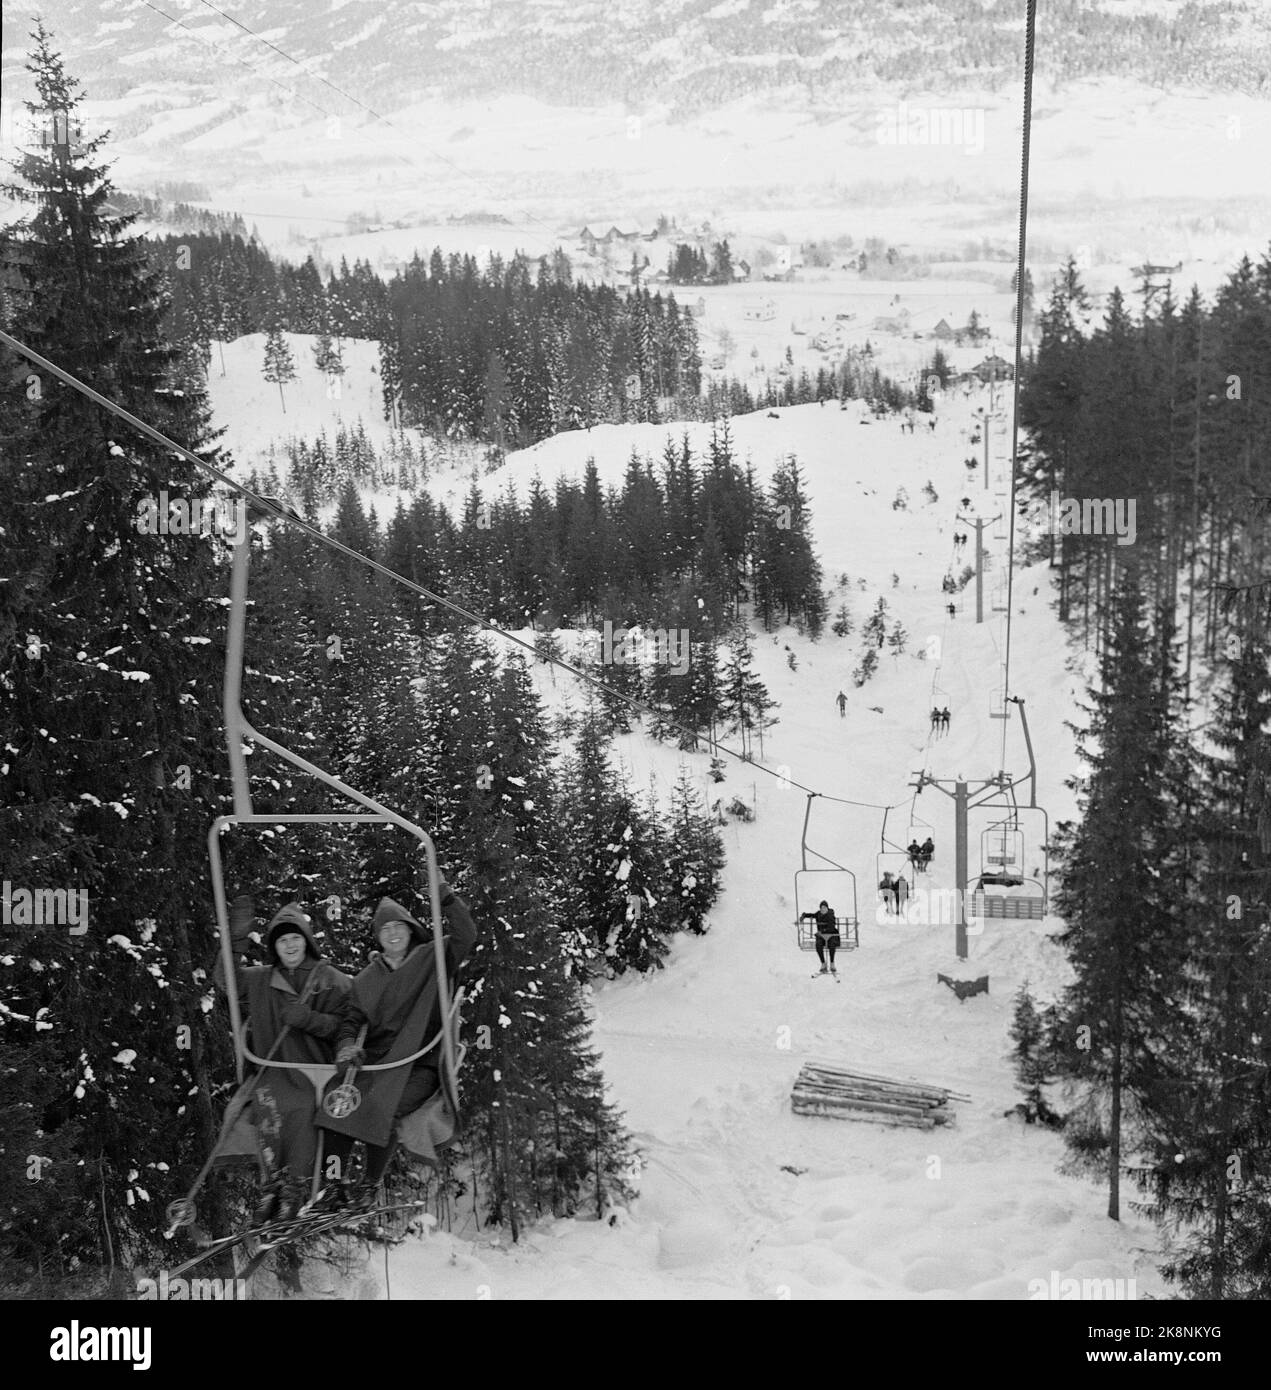 Hakadal 19630113 le nouveau centre de ski de Varingskollen a été ouvert, avec télésiège, sentiers alpins et sentiers de randonnée. Voici une photo de la remontée mécanique. Photo: Thorberg / NTB / NTB Banque D'Images